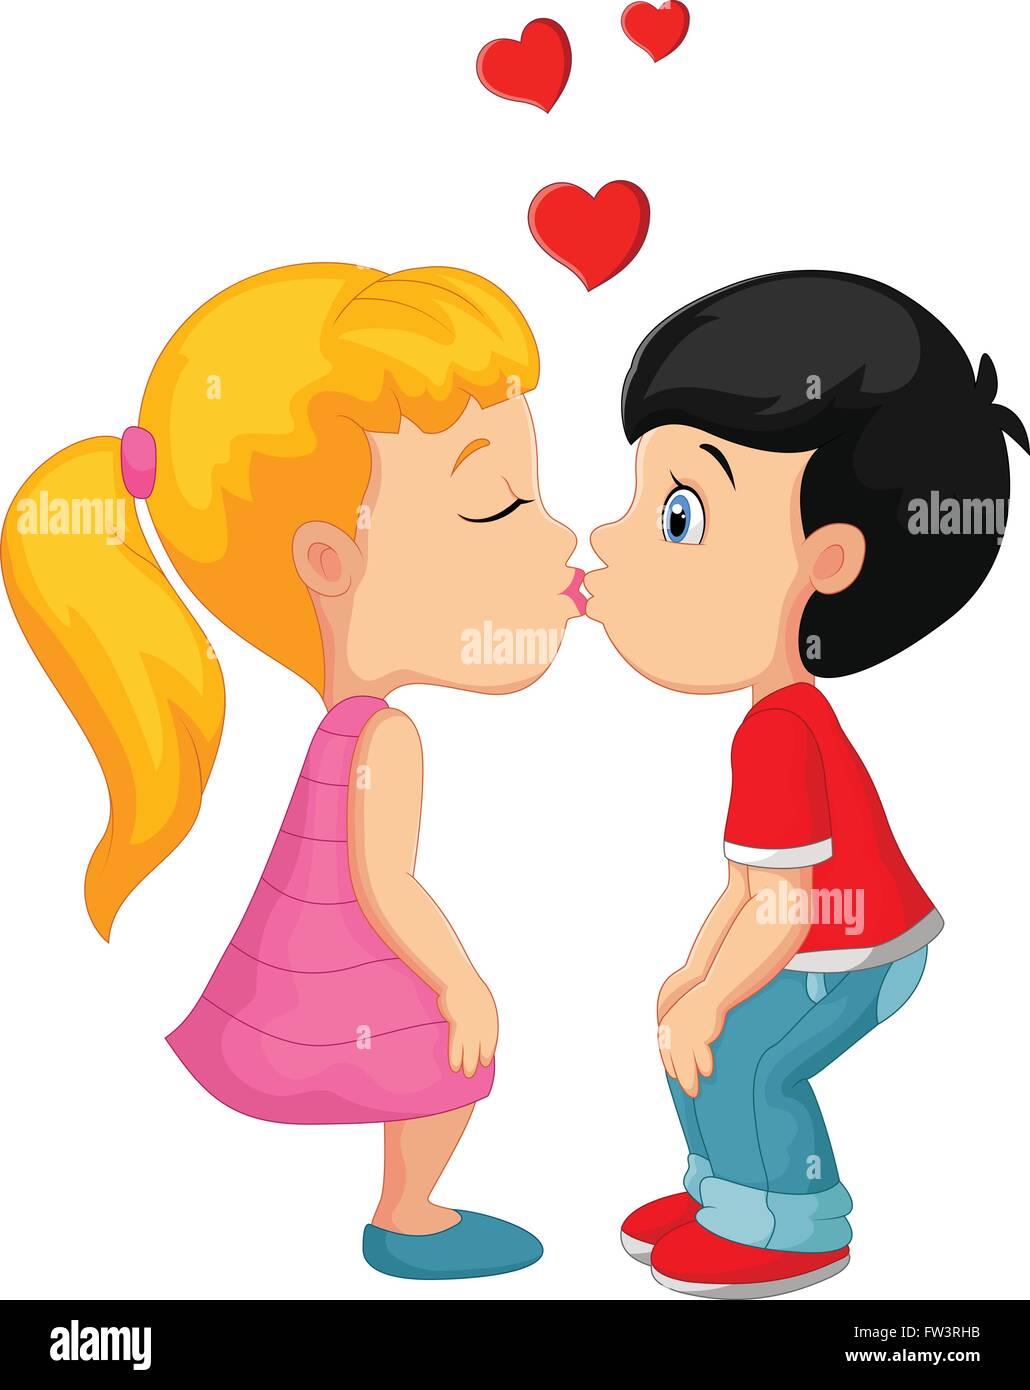 Kiss cartoon immagini e fotografie stock ad alta risoluzione - Alamy